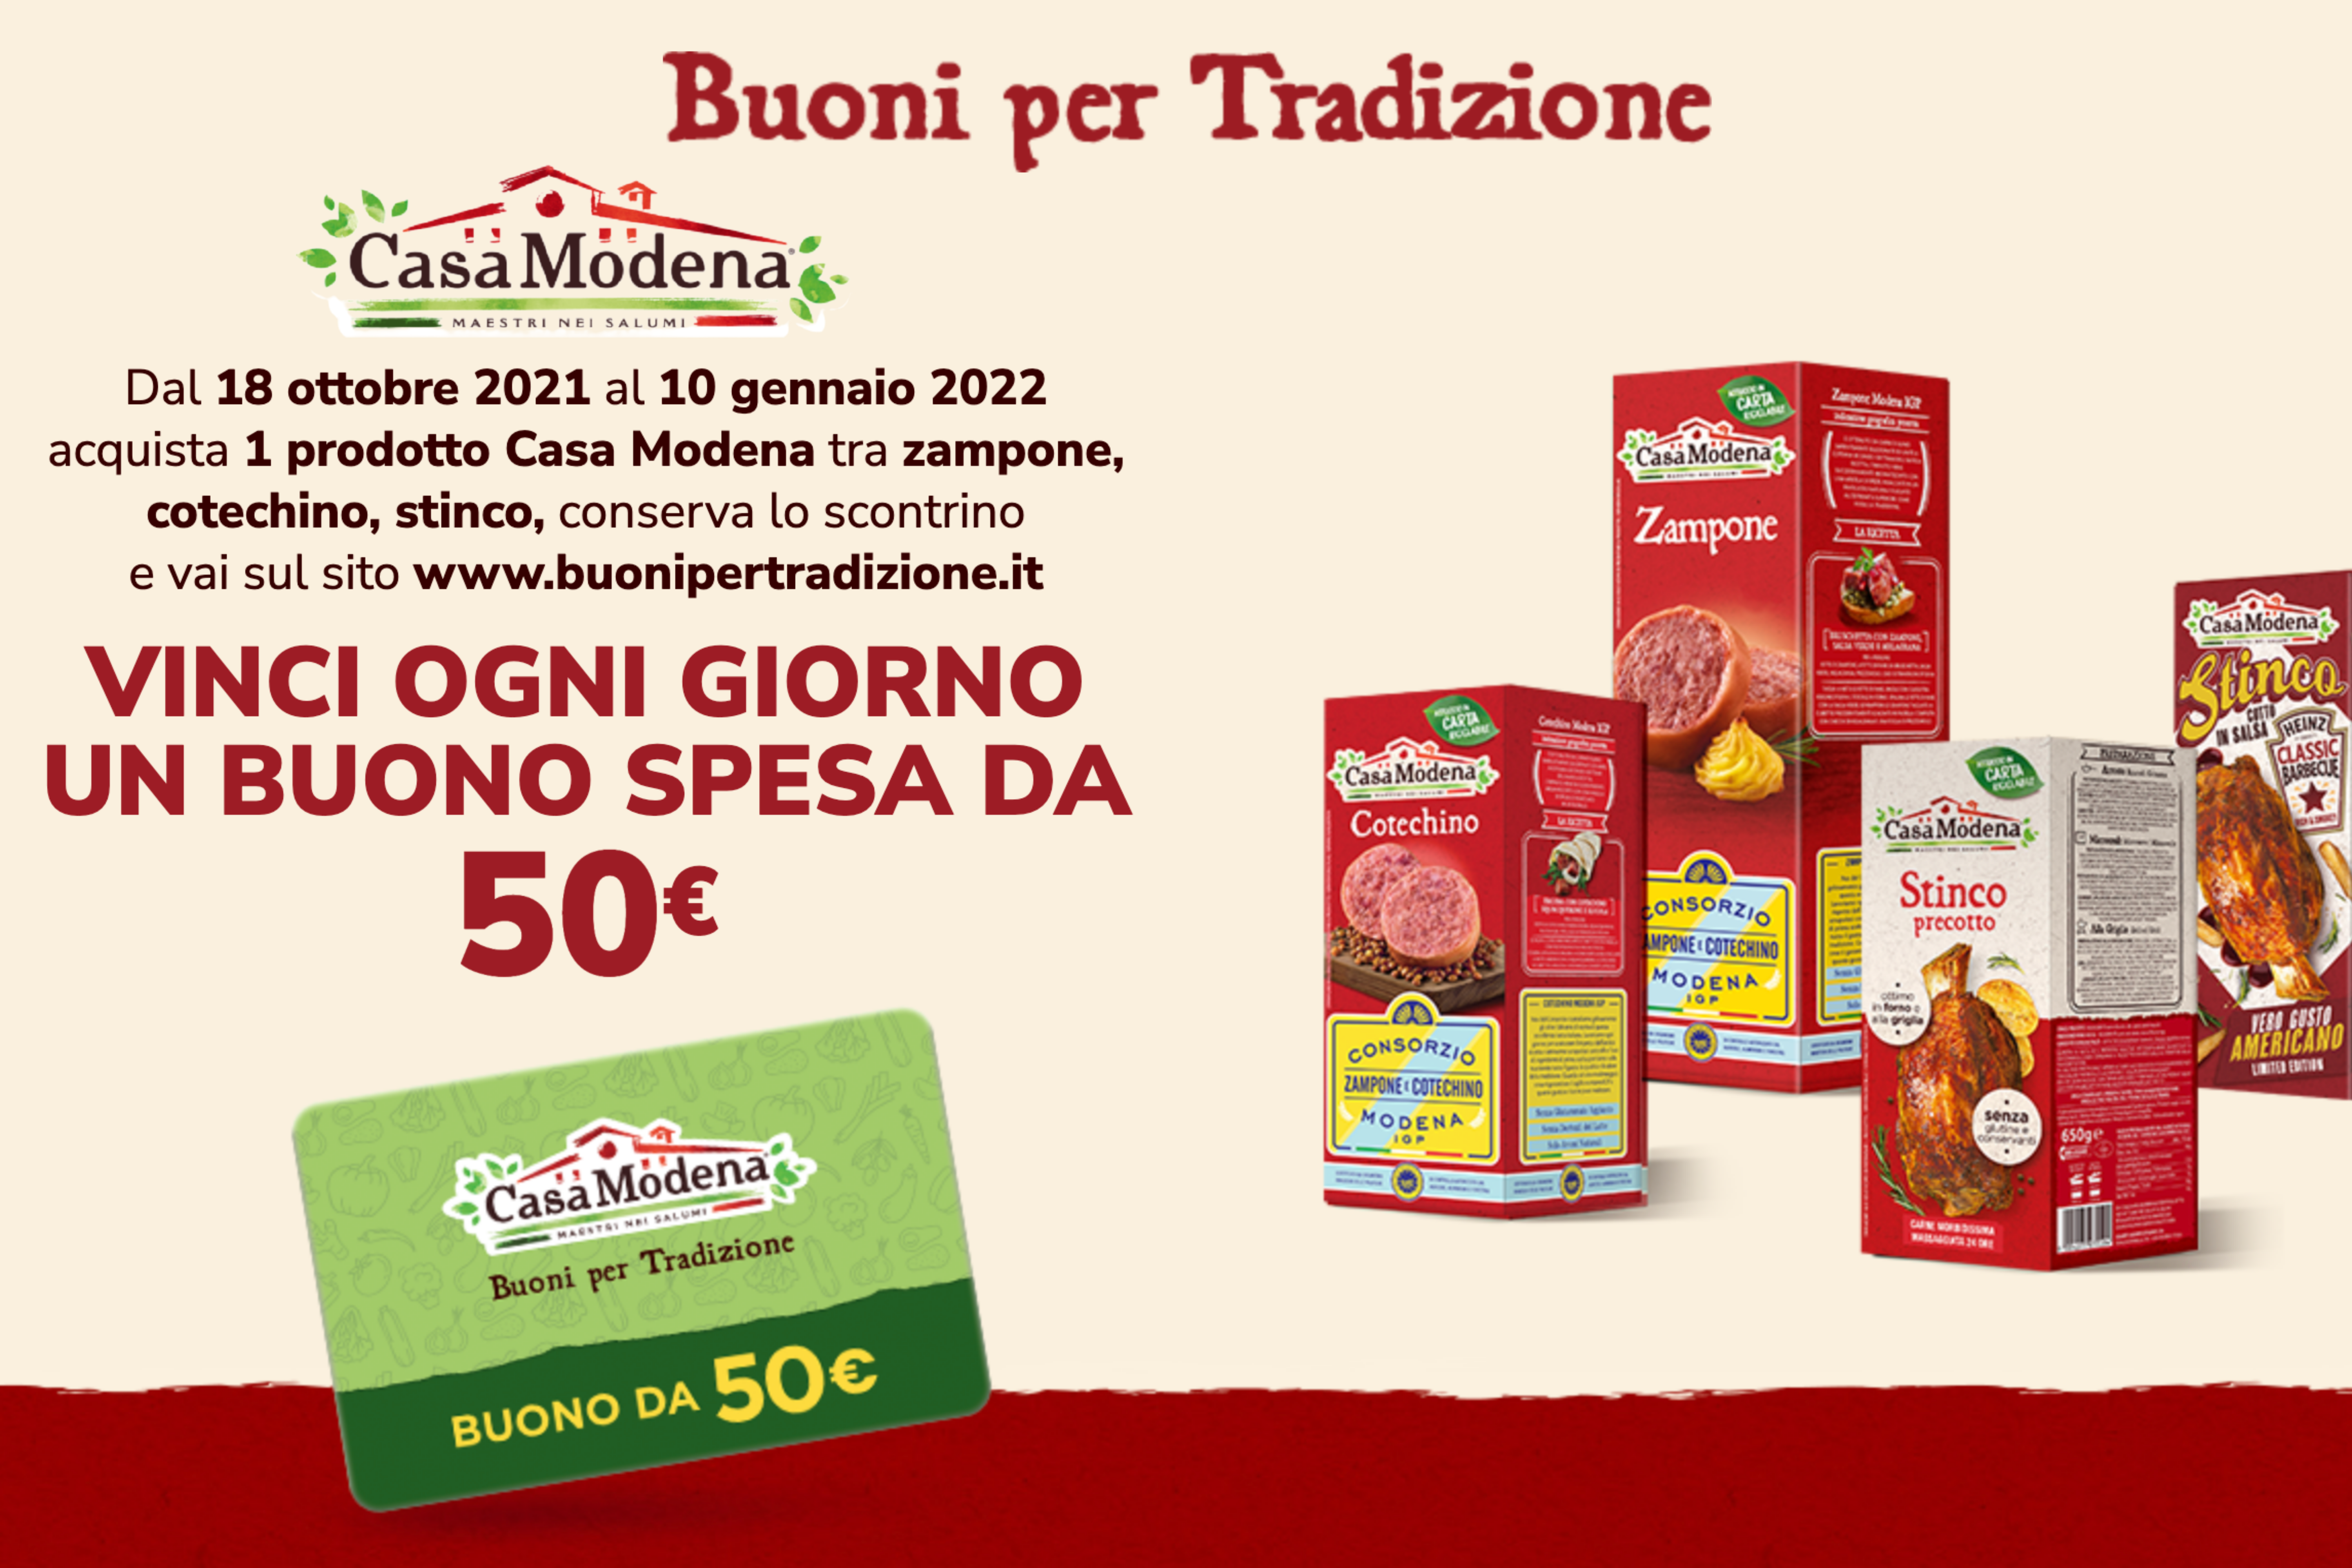 Concorso “Buoni per tradizione”: come vincere un buono spesa da 50€ con Casa Modena